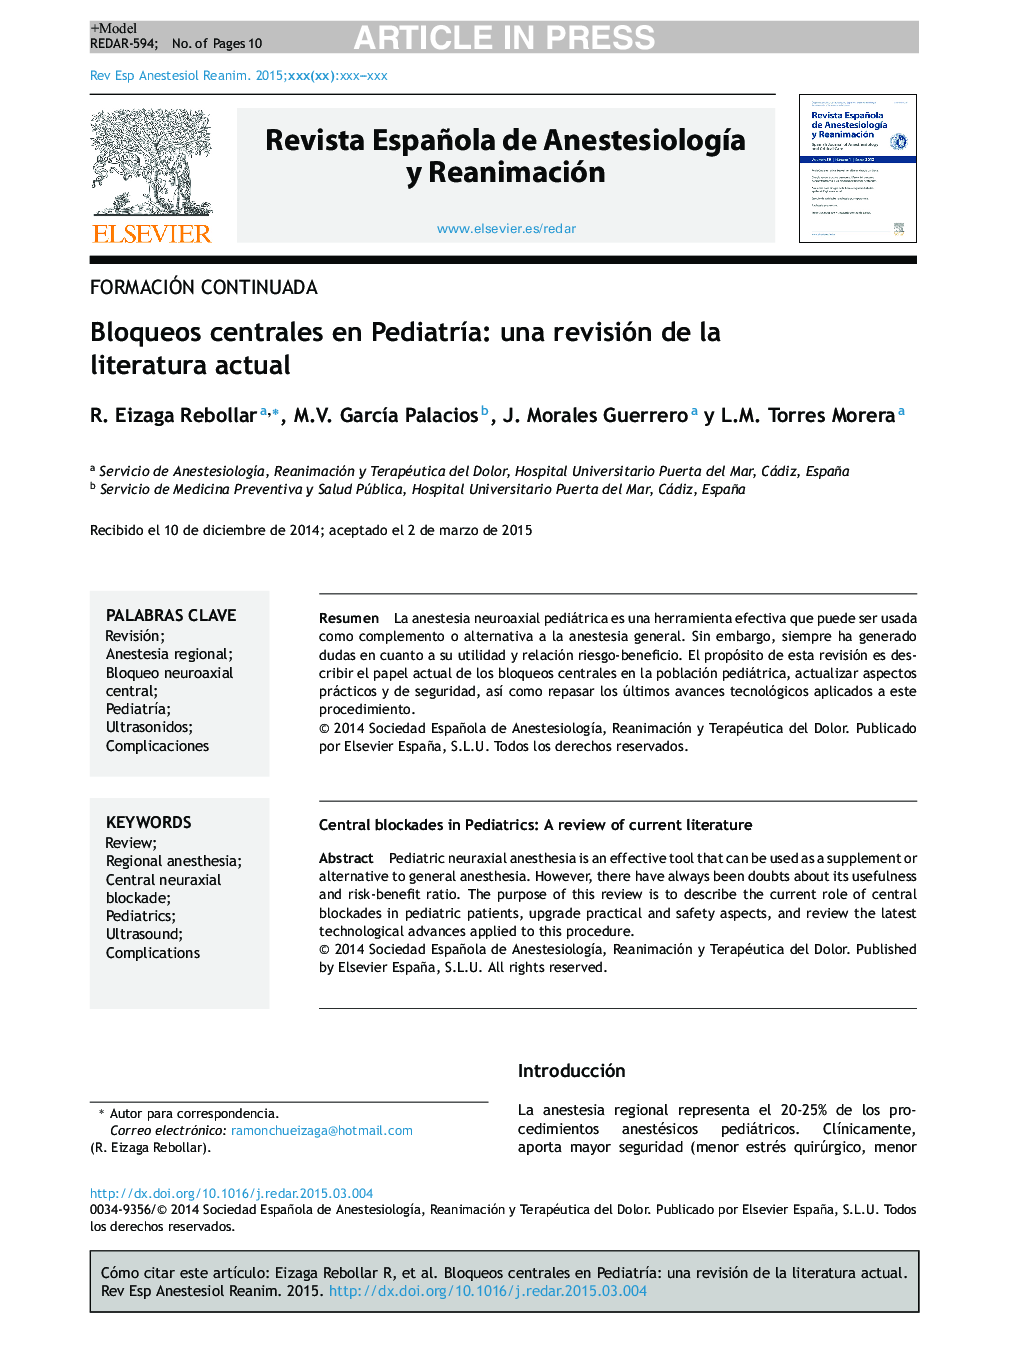 Bloqueos centrales en PediatrÃ­a: una revisión de la literatura actual